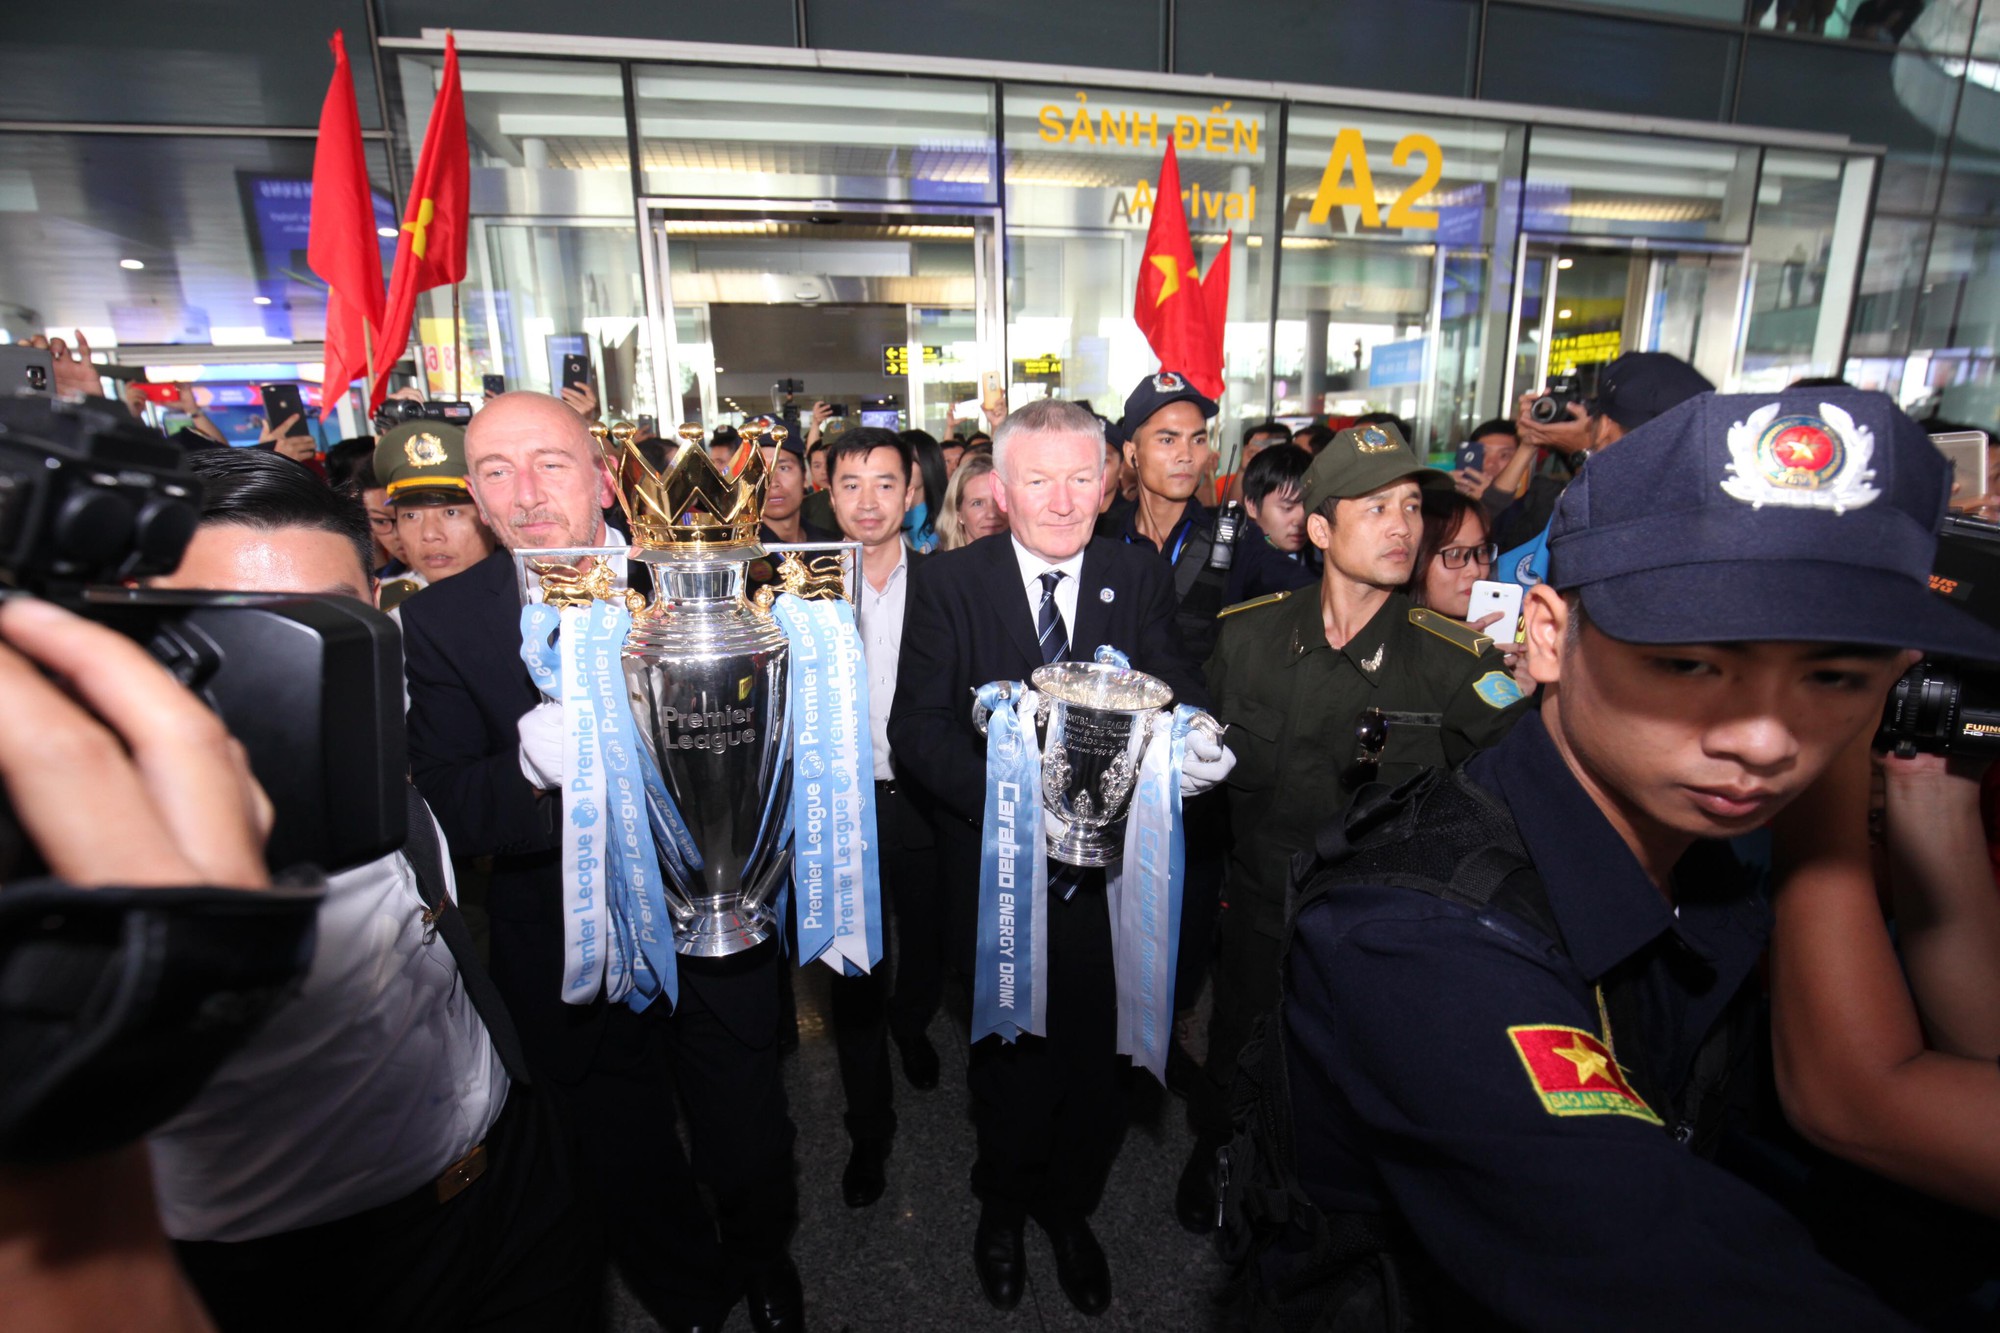 Cúp bạc Premier League được bảo vệ cẩn mật khi đến Việt Nam - Ảnh 2.